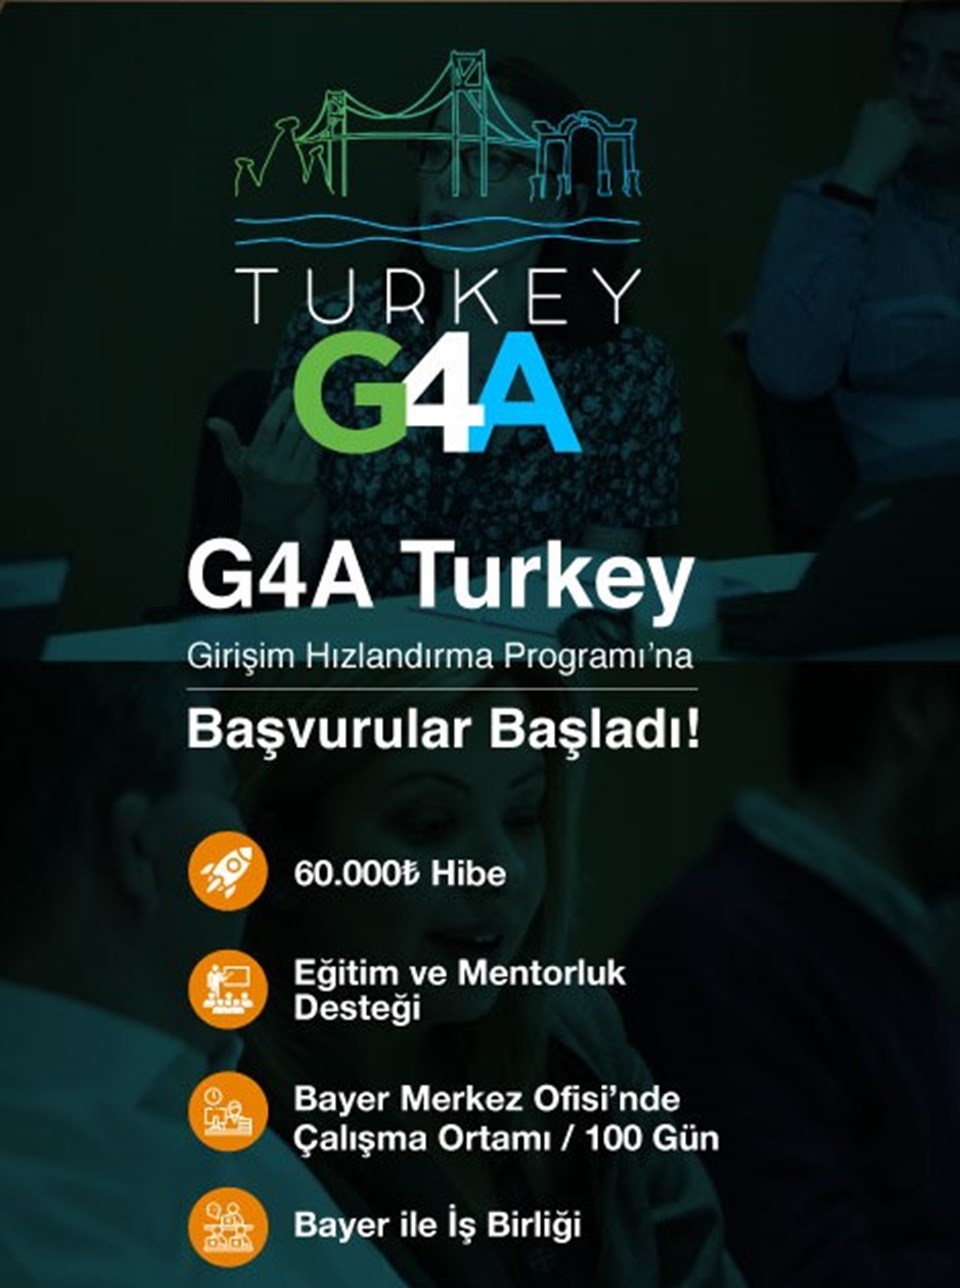 G4A Turkey 2020 girişimcilerin başvurularını bekliyor - 1